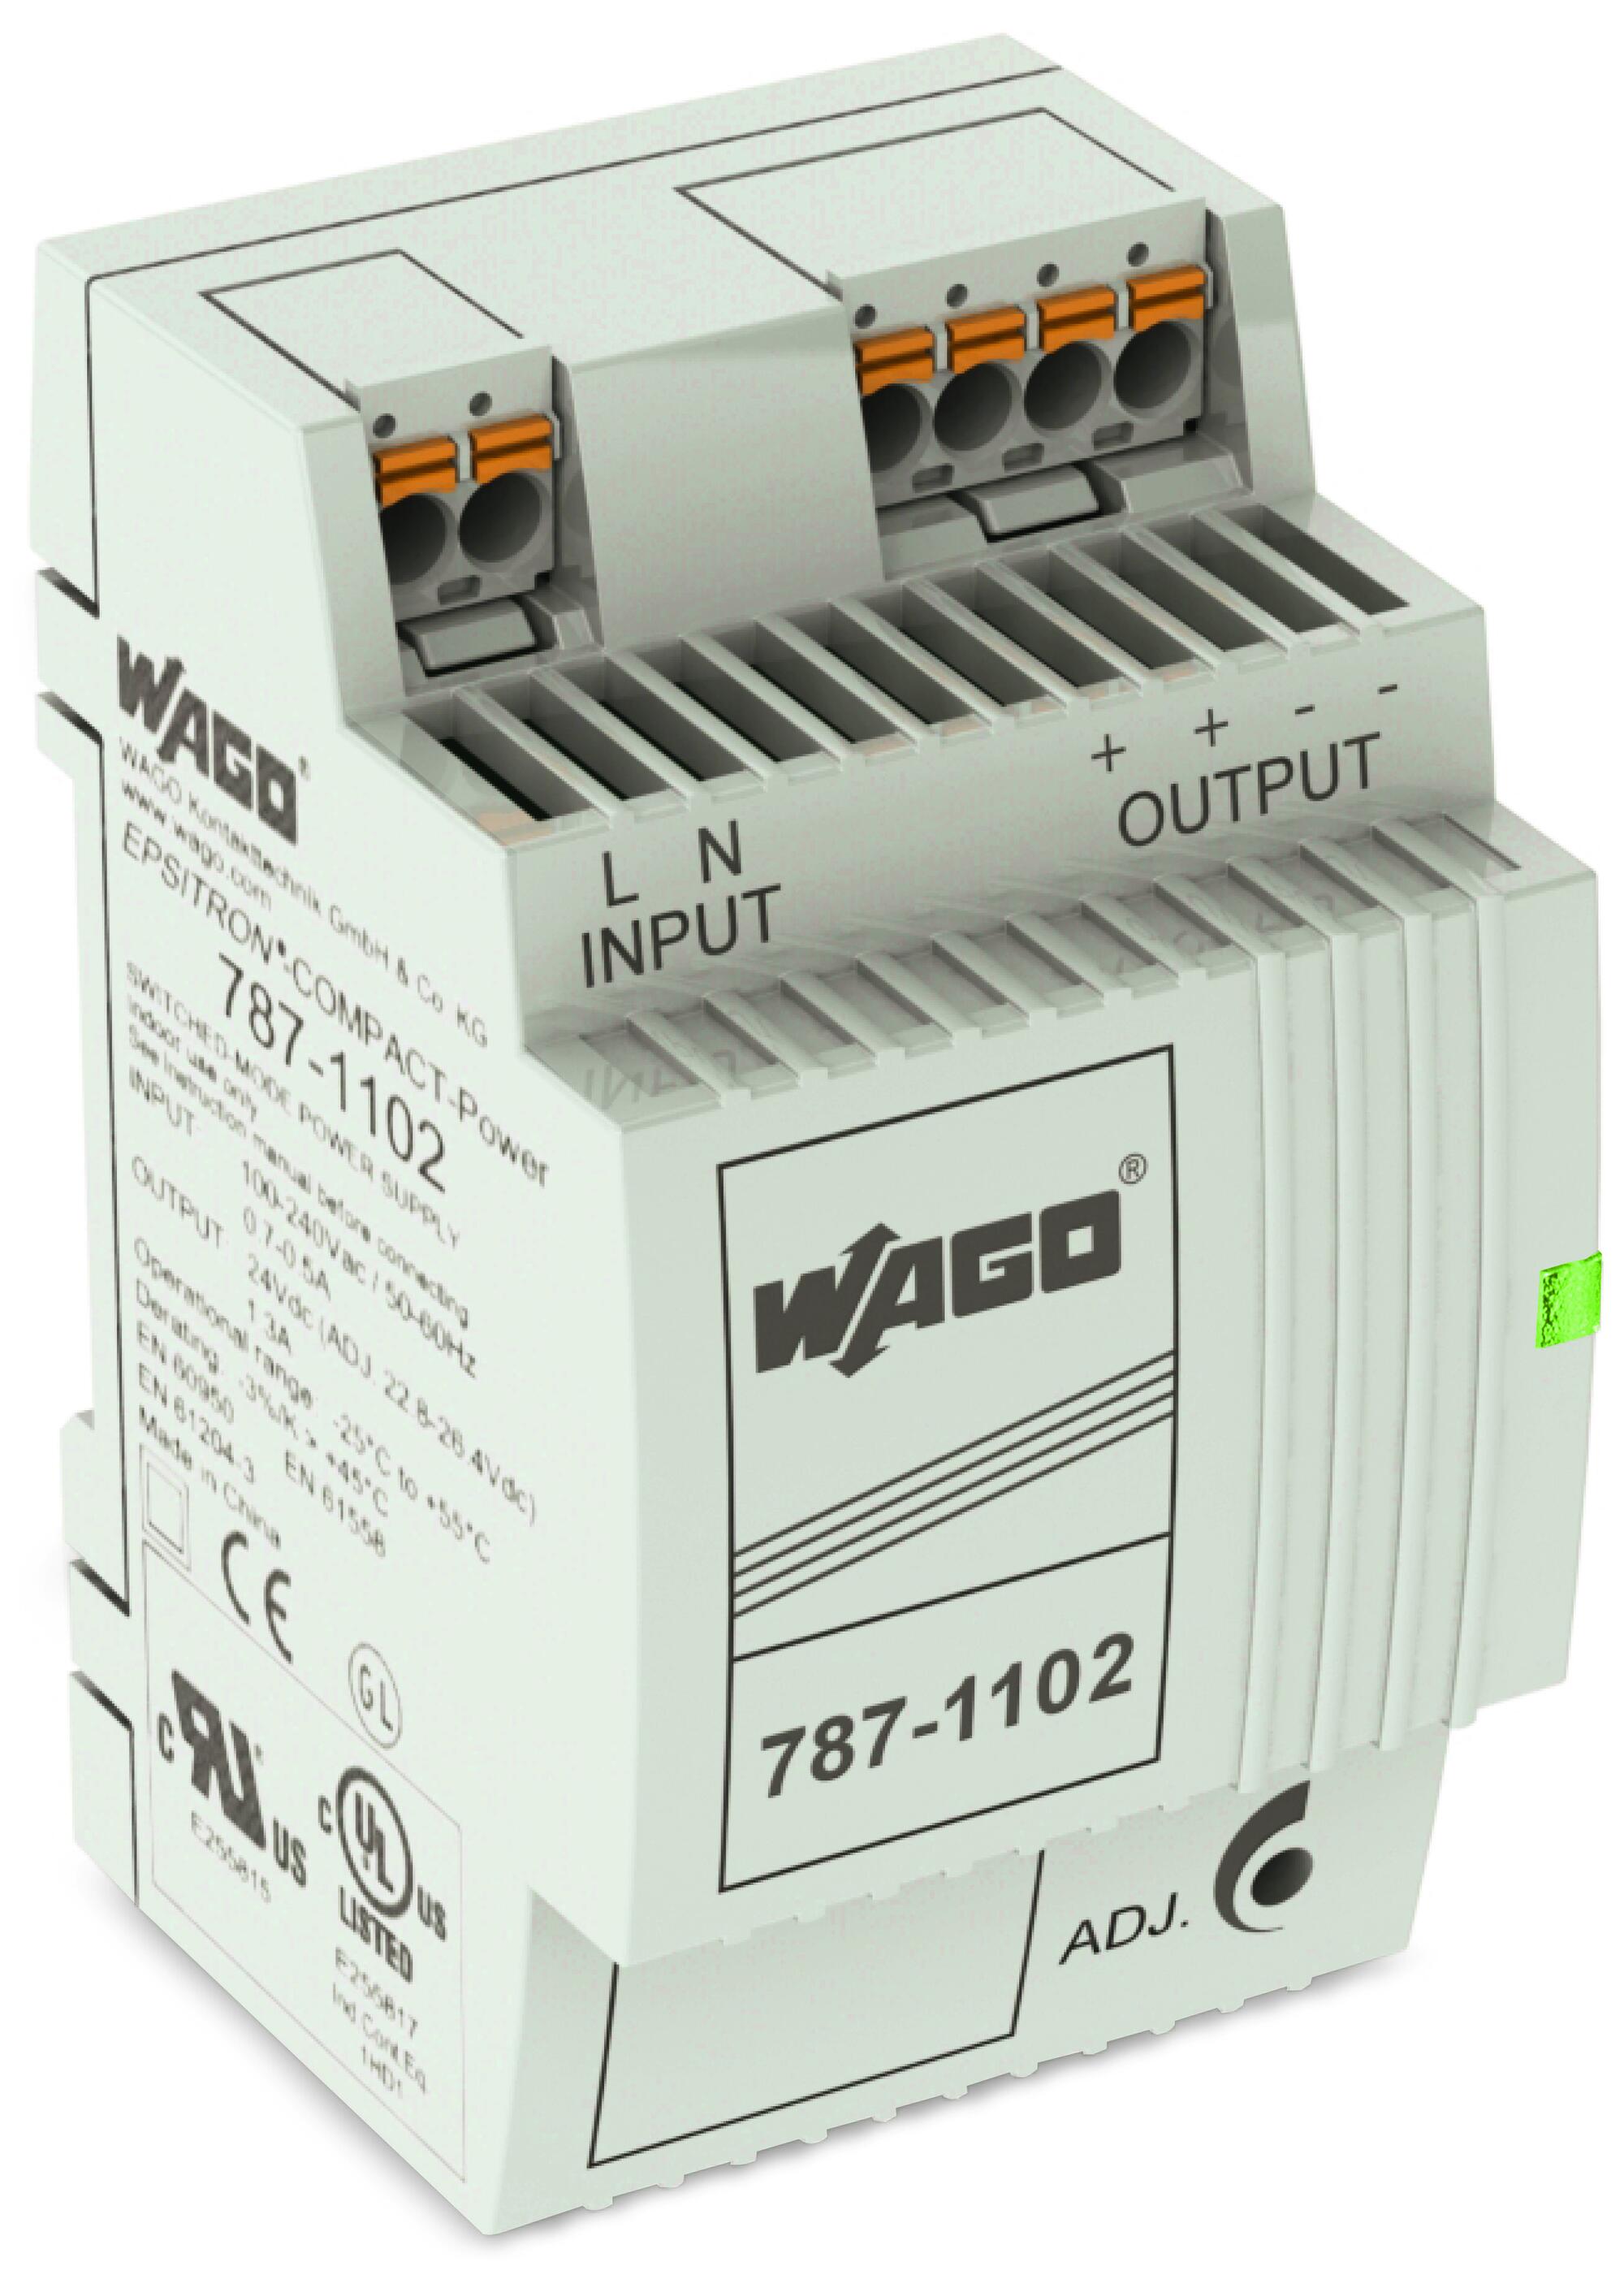 开关稳压电源; COMPACT紧凑型电源; 单相; 24 VDC输出电压; 1.3 A输出电流; DC-OK LED